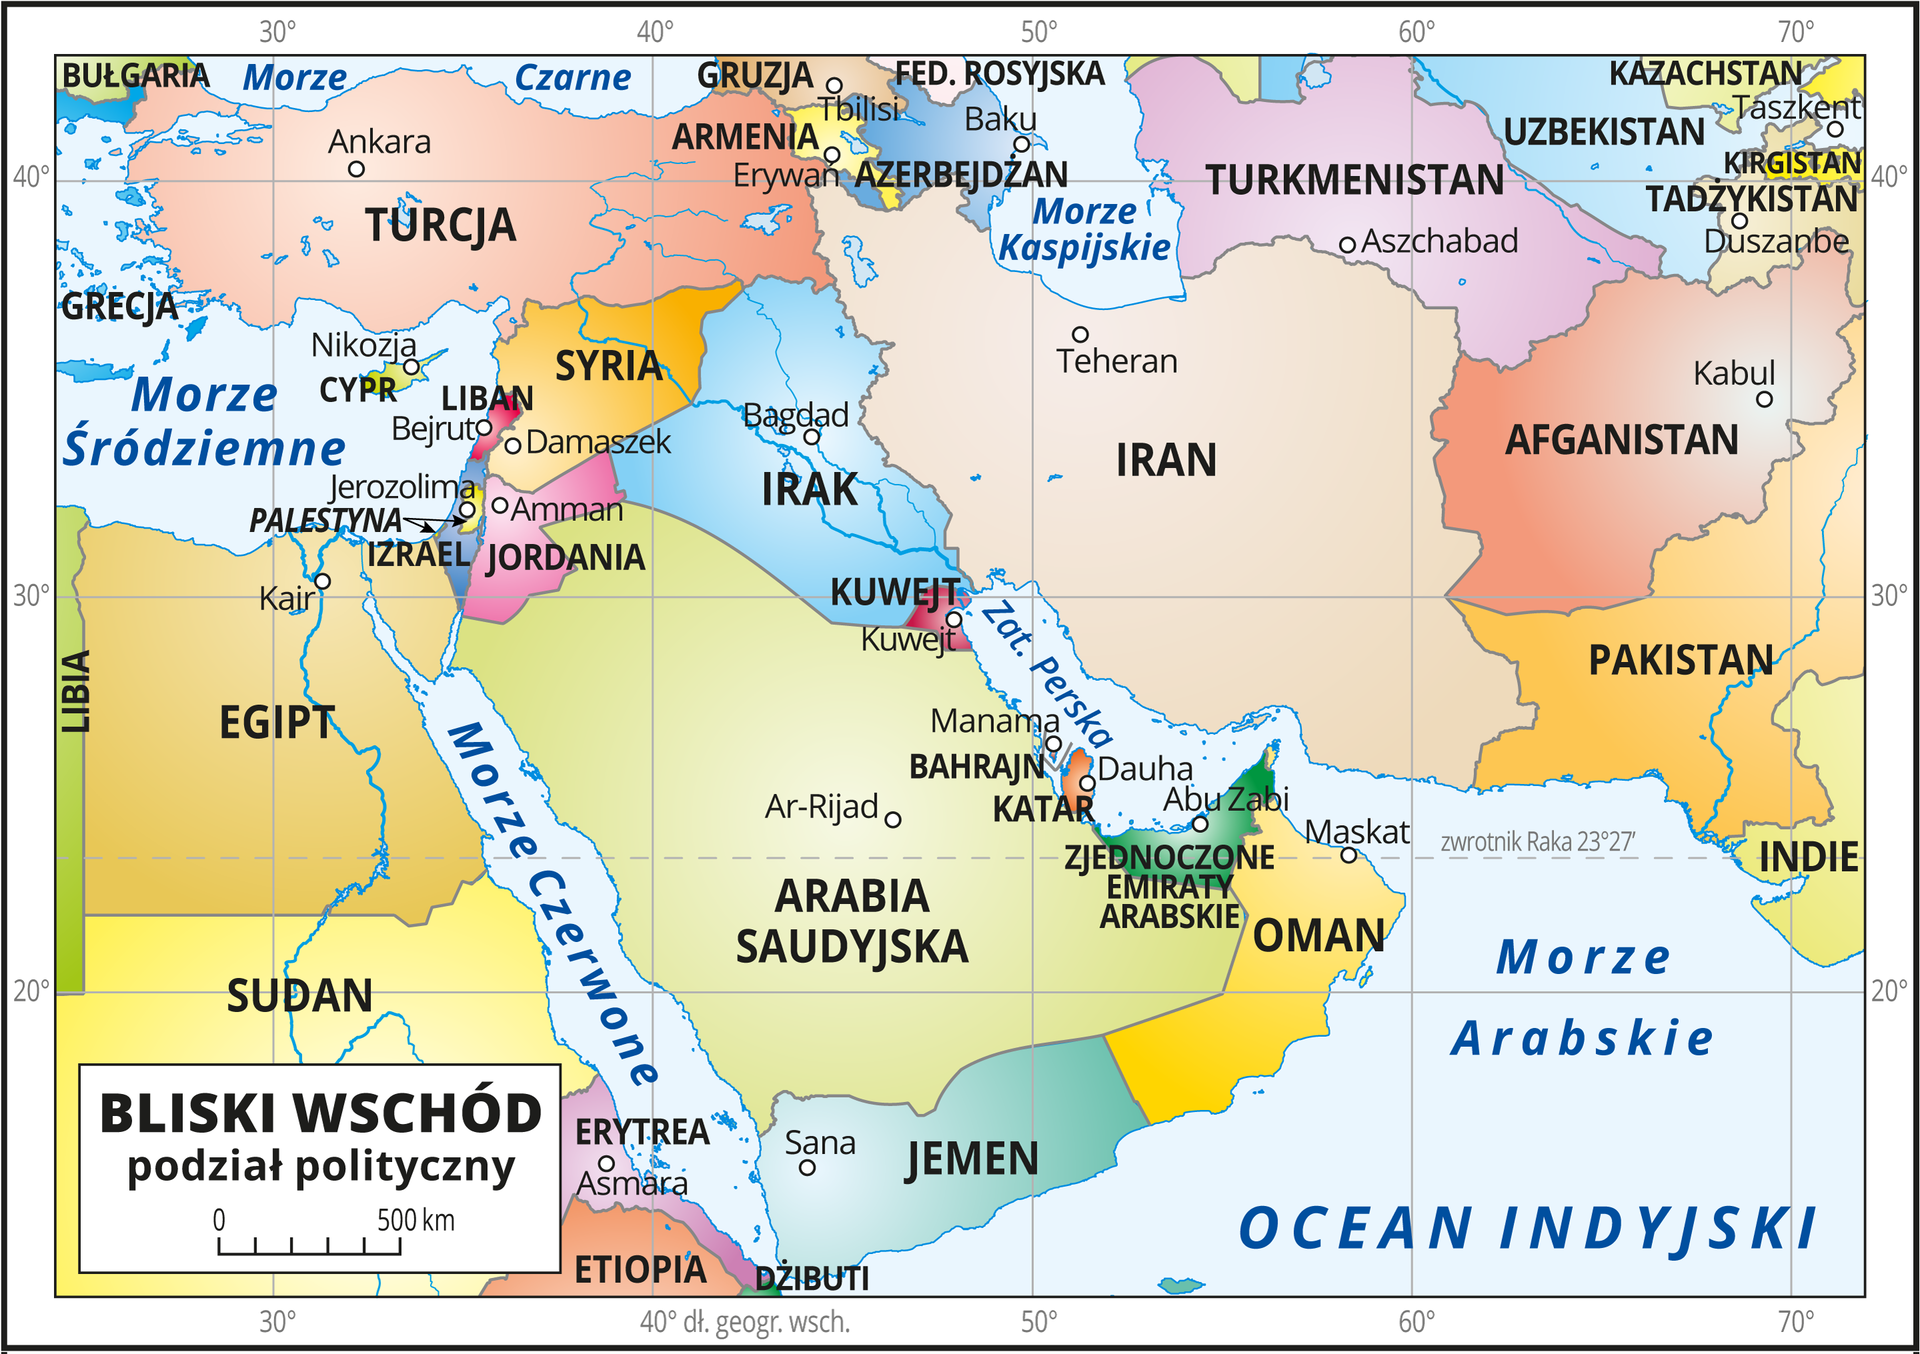 Ilustracja przedstawia mapę polityczną obszarów Bliskiego Wschodu. Państwa wyróżnione kolorami i opisane. Oznaczono i opisano stolice. Morza i oceany zaznaczono kolorem niebieskim i opisano. Mapa pokryta jest równoleżnikami i południkami. Dookoła mapy w białej ramce opisano południki i równoleżniki co dziesięć stopni. Bliski Wschód to państwa położone w południowo‑zachodniej Azji: Turcja, Syria, Liban, Irak, Iran, Palestyna, Jordania, Izrael, Kuwejt, Arabia Saudyjska, Bahrajn, Katar, Zjednoczone Emiraty Arabskie, Oman, Jemen oraz położony w Afryce Egipt. Na mapie zastosowano podziałkę liniową od zera do pięciuset kilometrów co sto kilometrów.